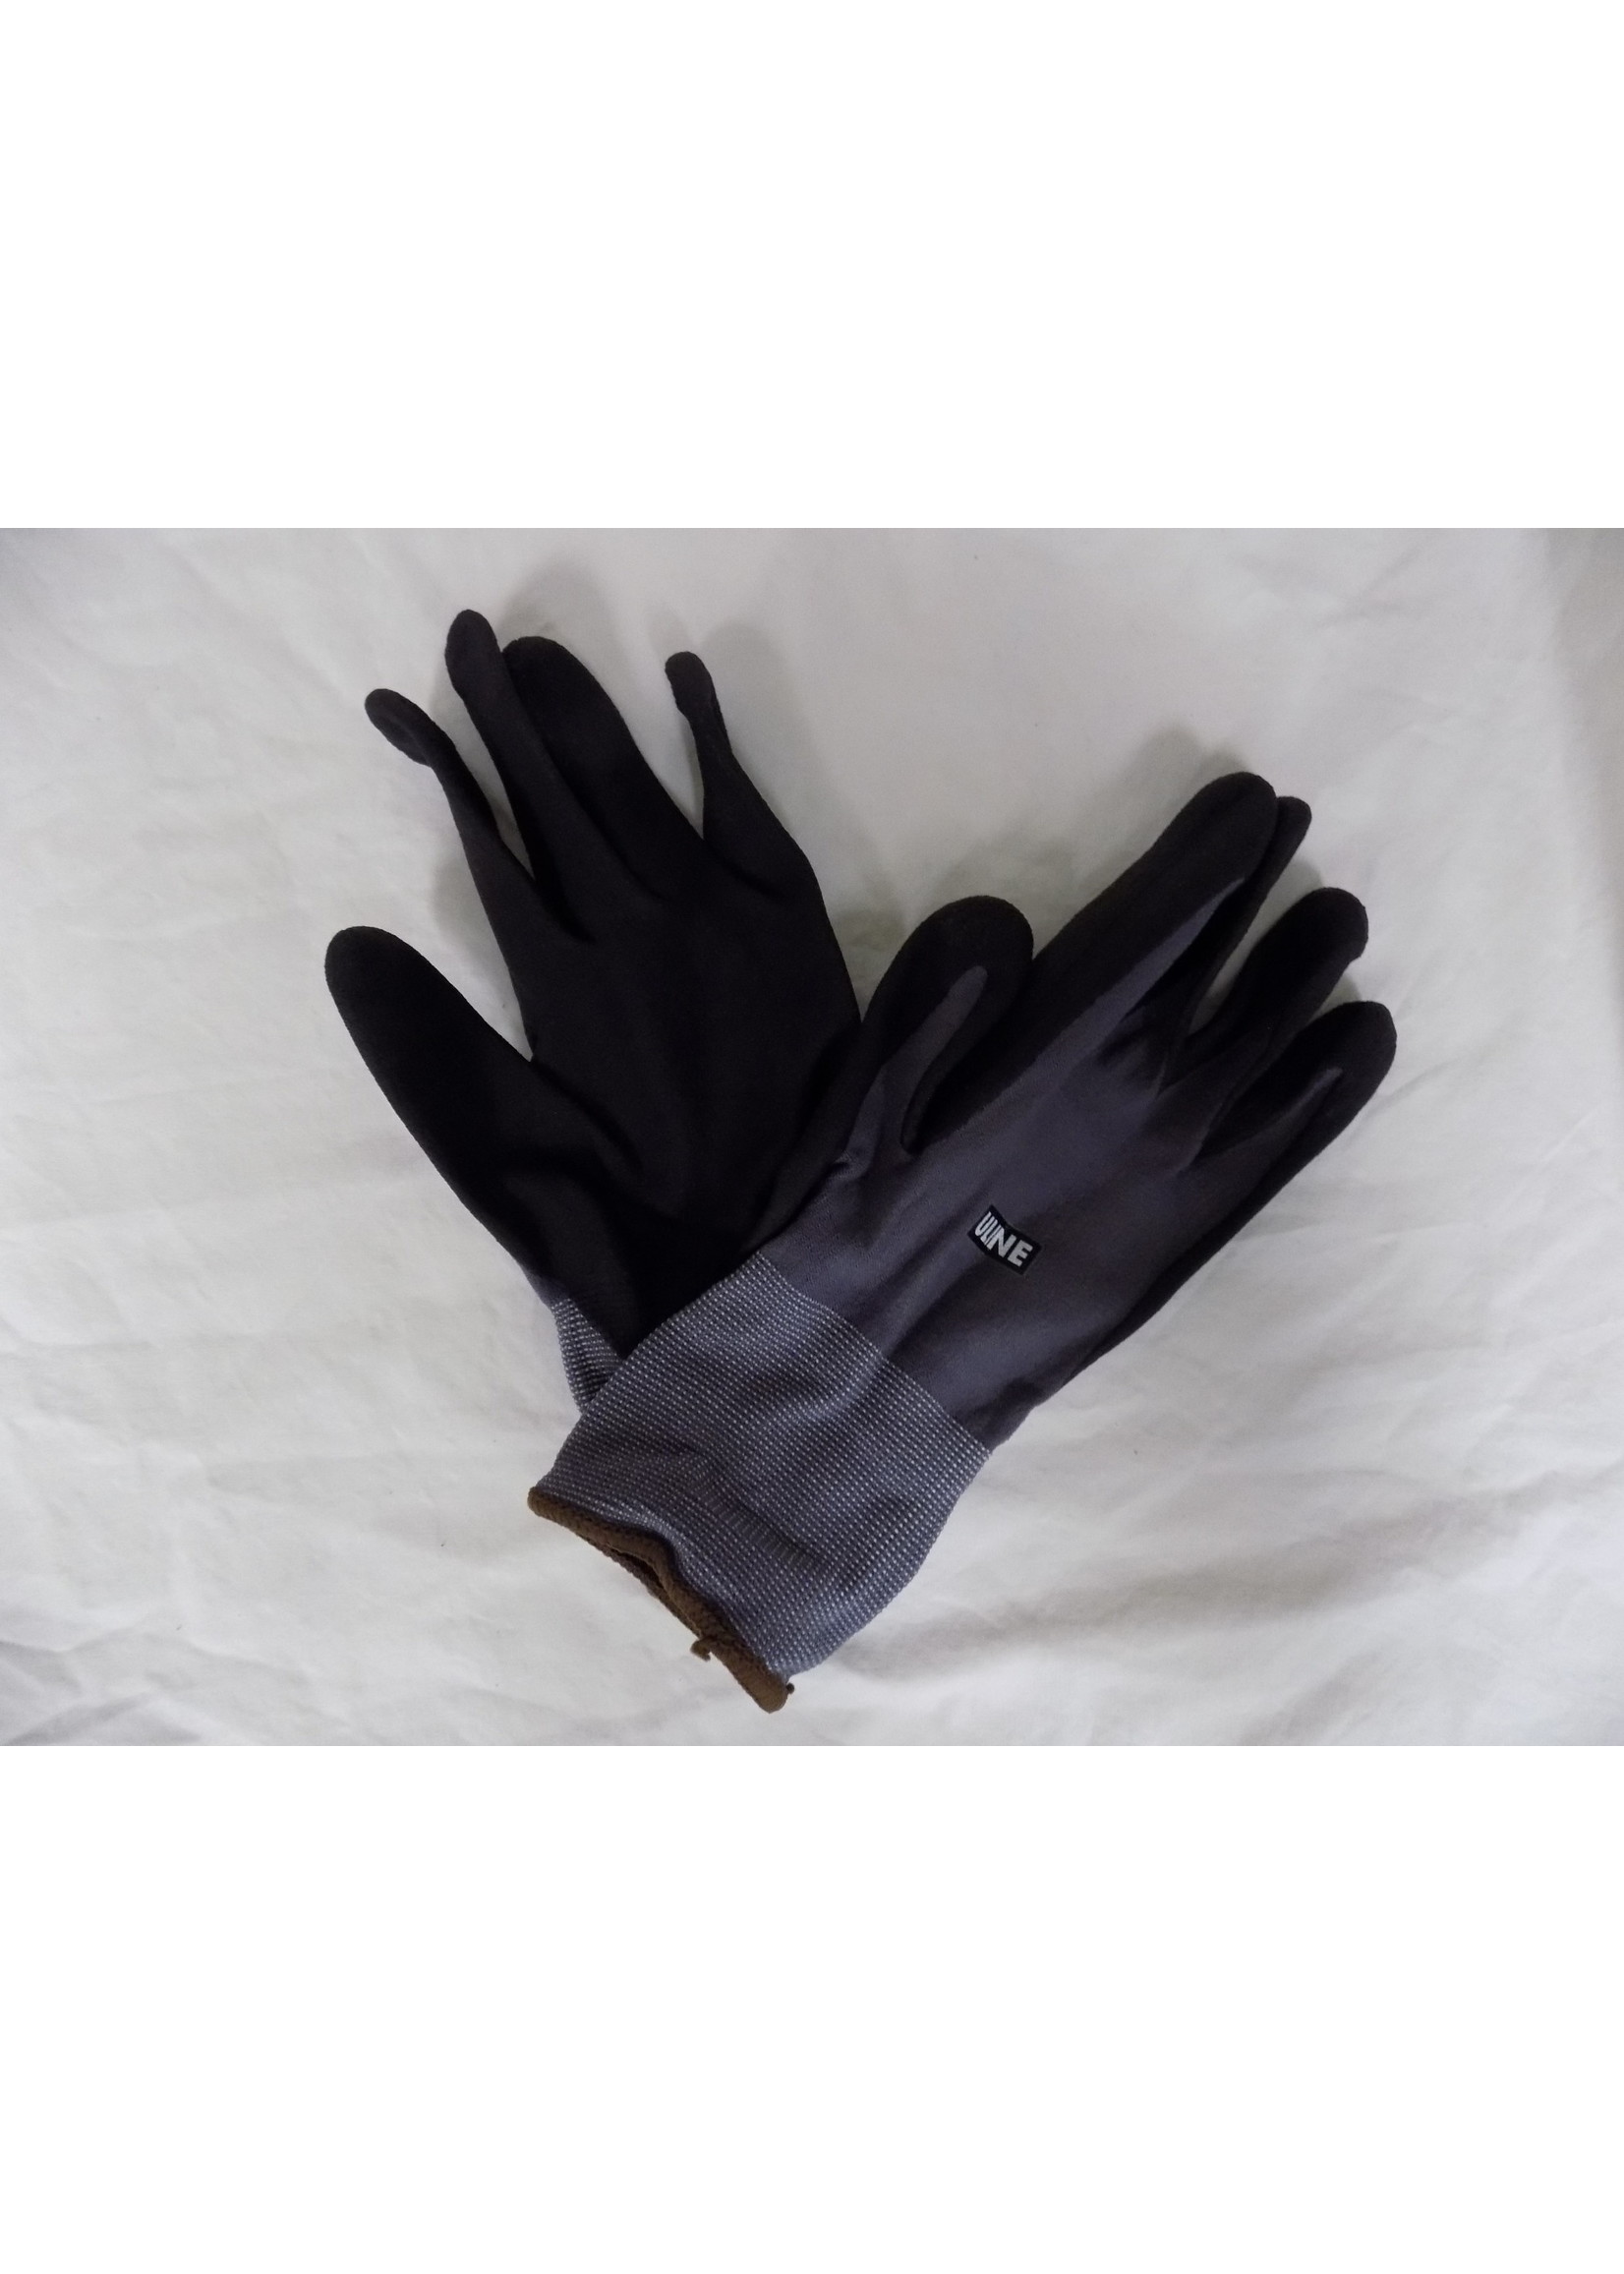 Coolflex Uline Coolflex Nitrile Gloves EX Large